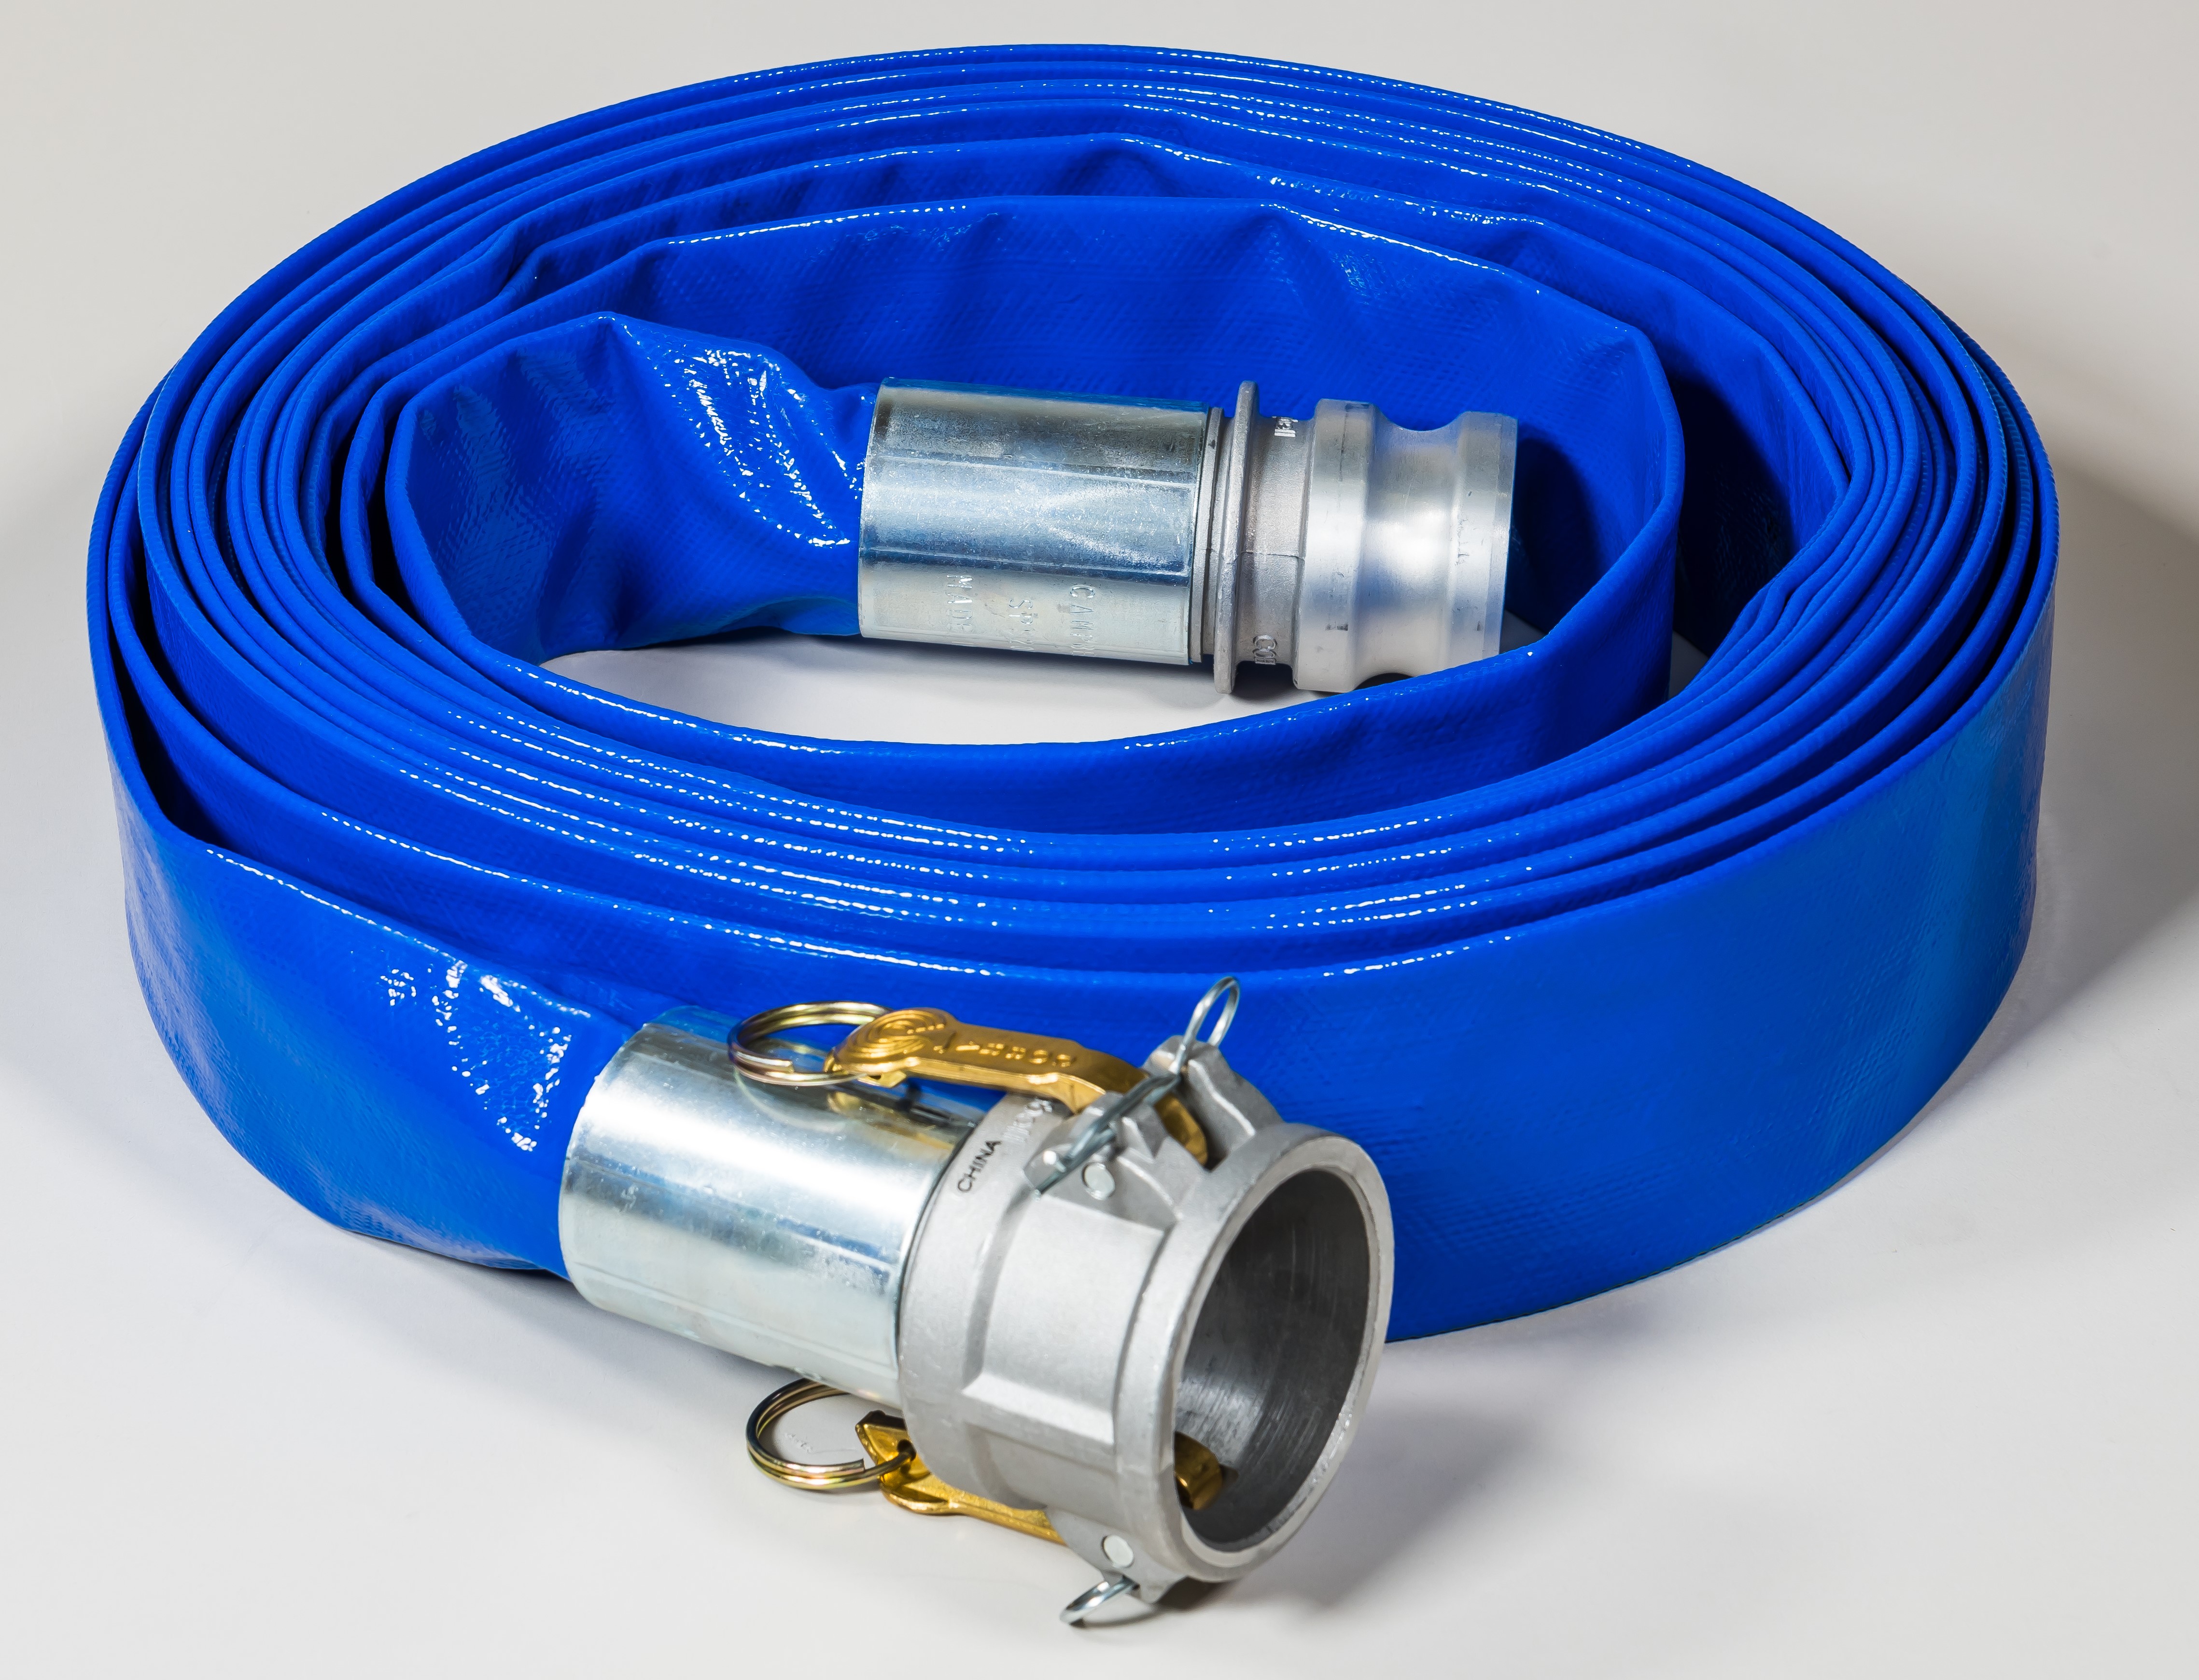 PVC blue layflat hose assembly